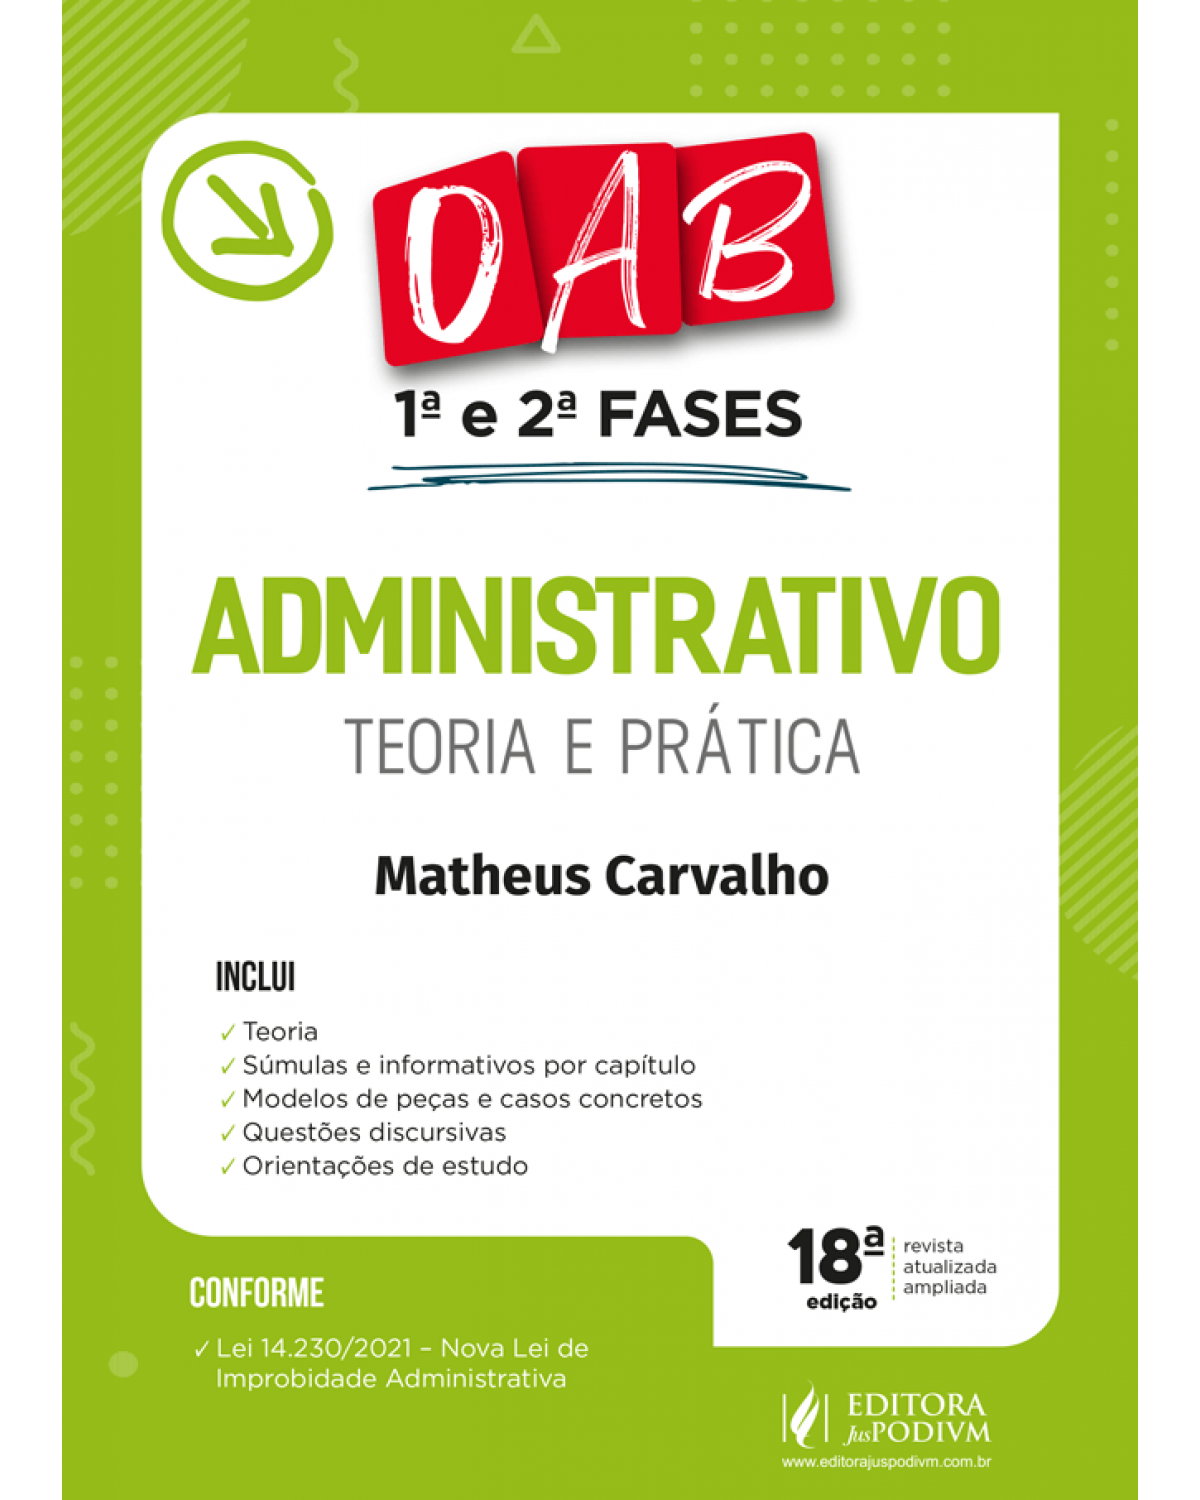 Administrativo - Teoria e prática - OAB 1ª e 2ª fases - 18ª Edição | 2022